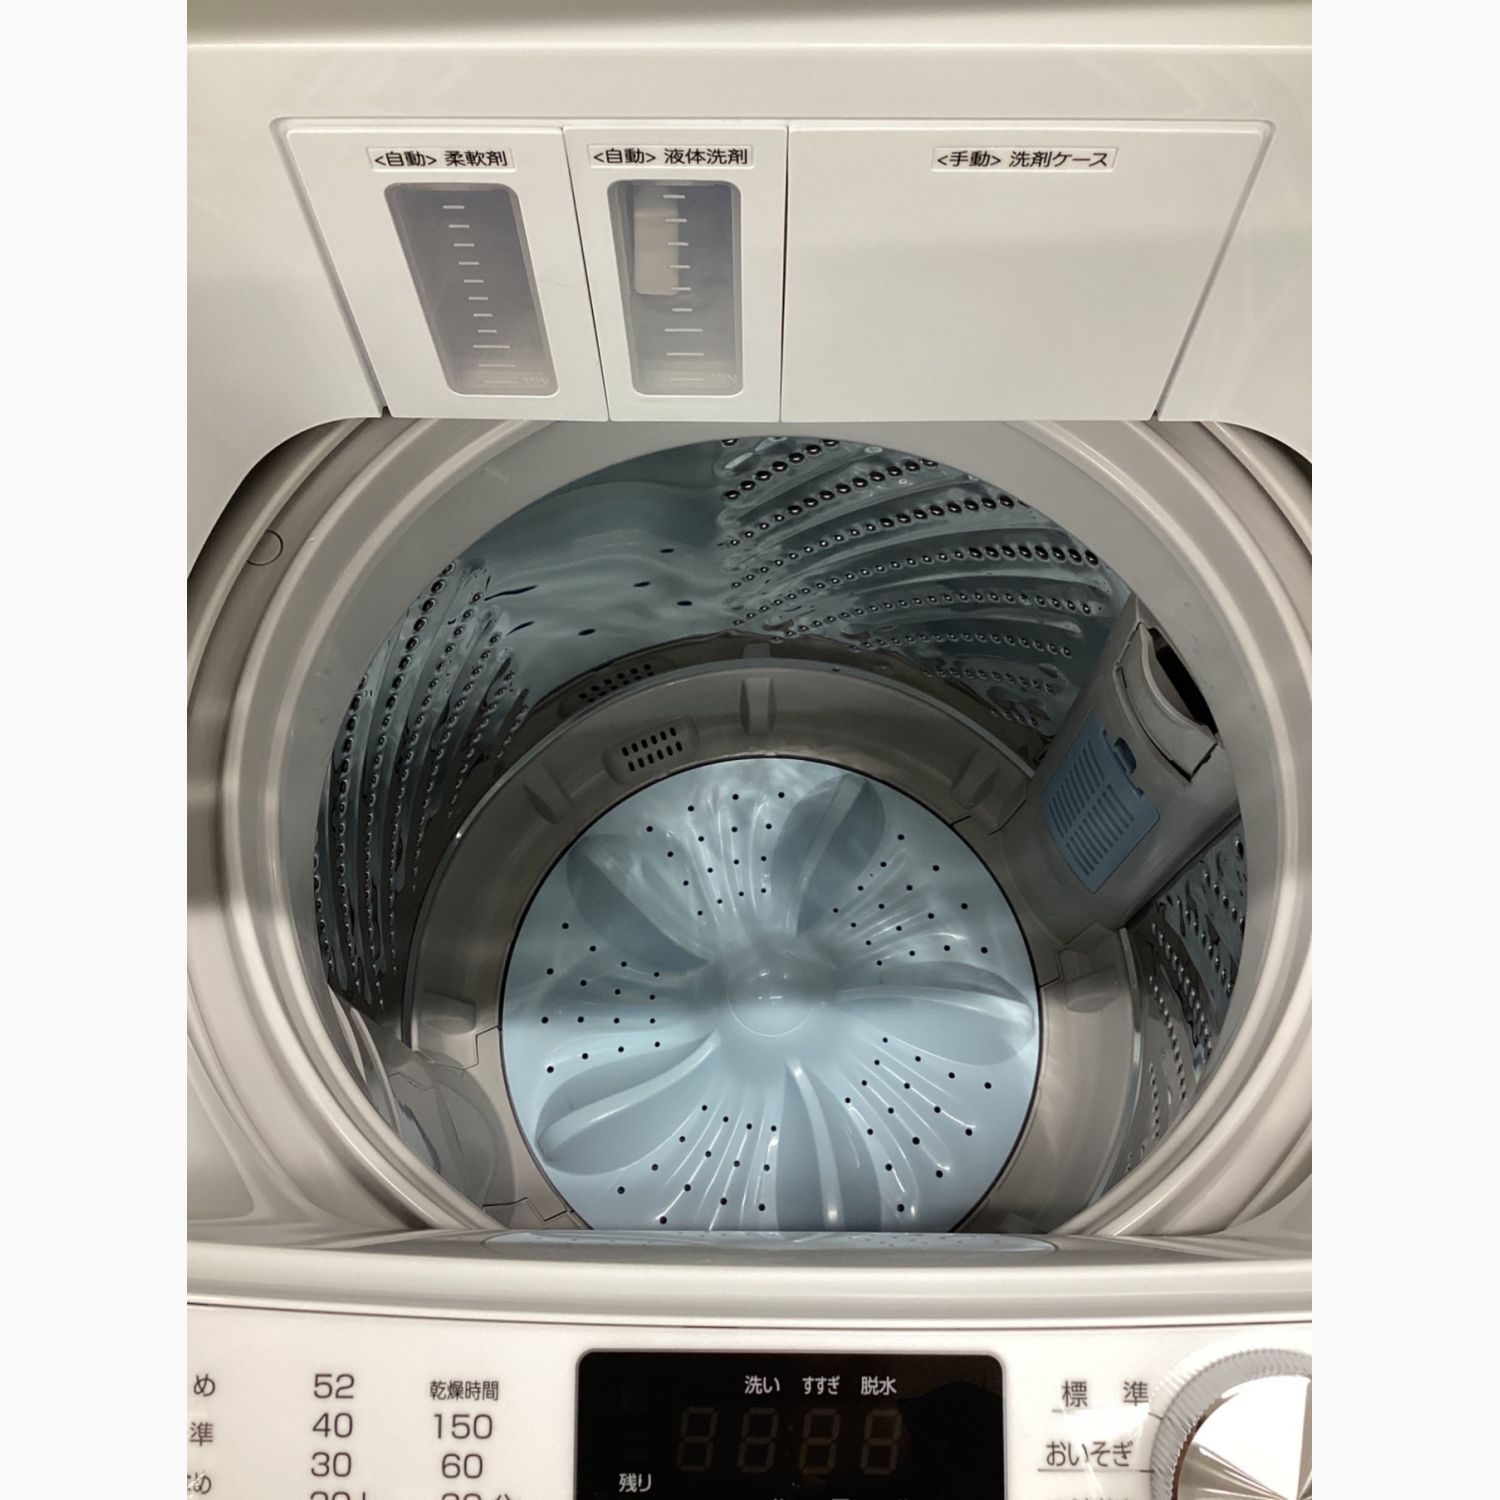 【高年式】2021年式 7kg e angle 洗濯機 ANG-WM-B70-W家電のレンタル